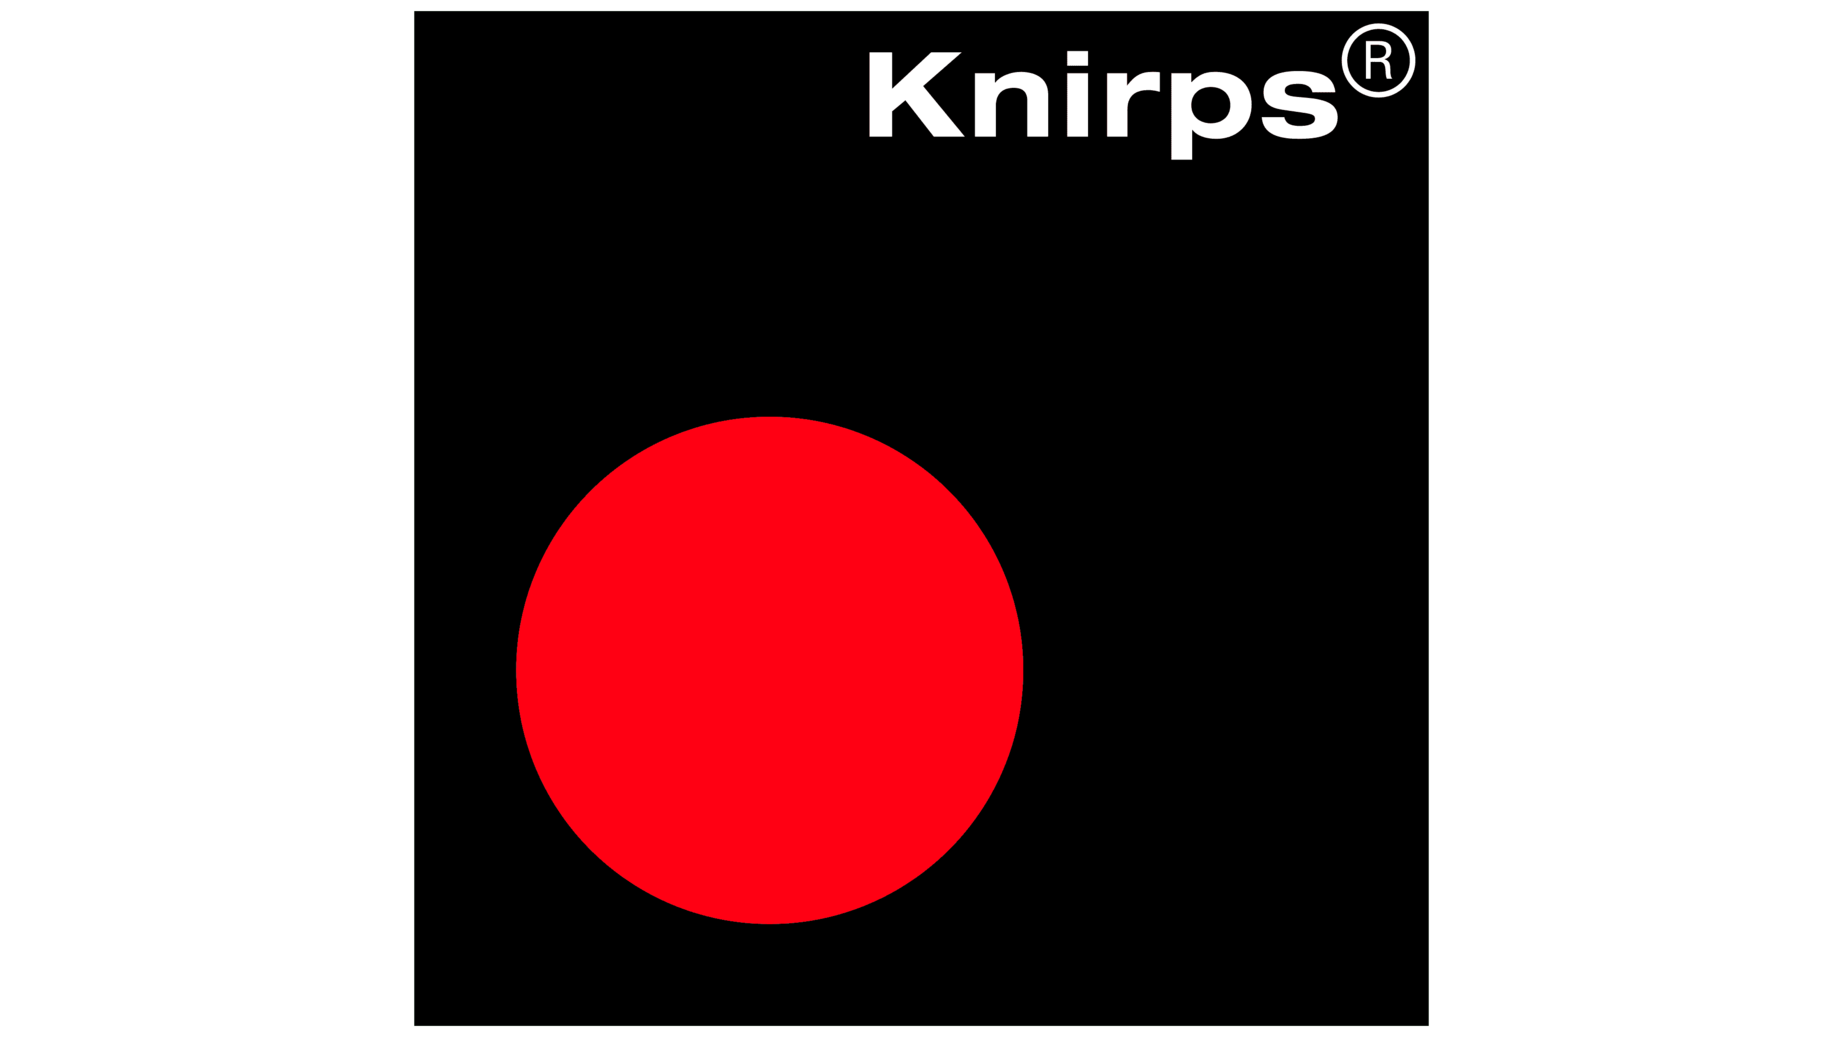 Knirps sign